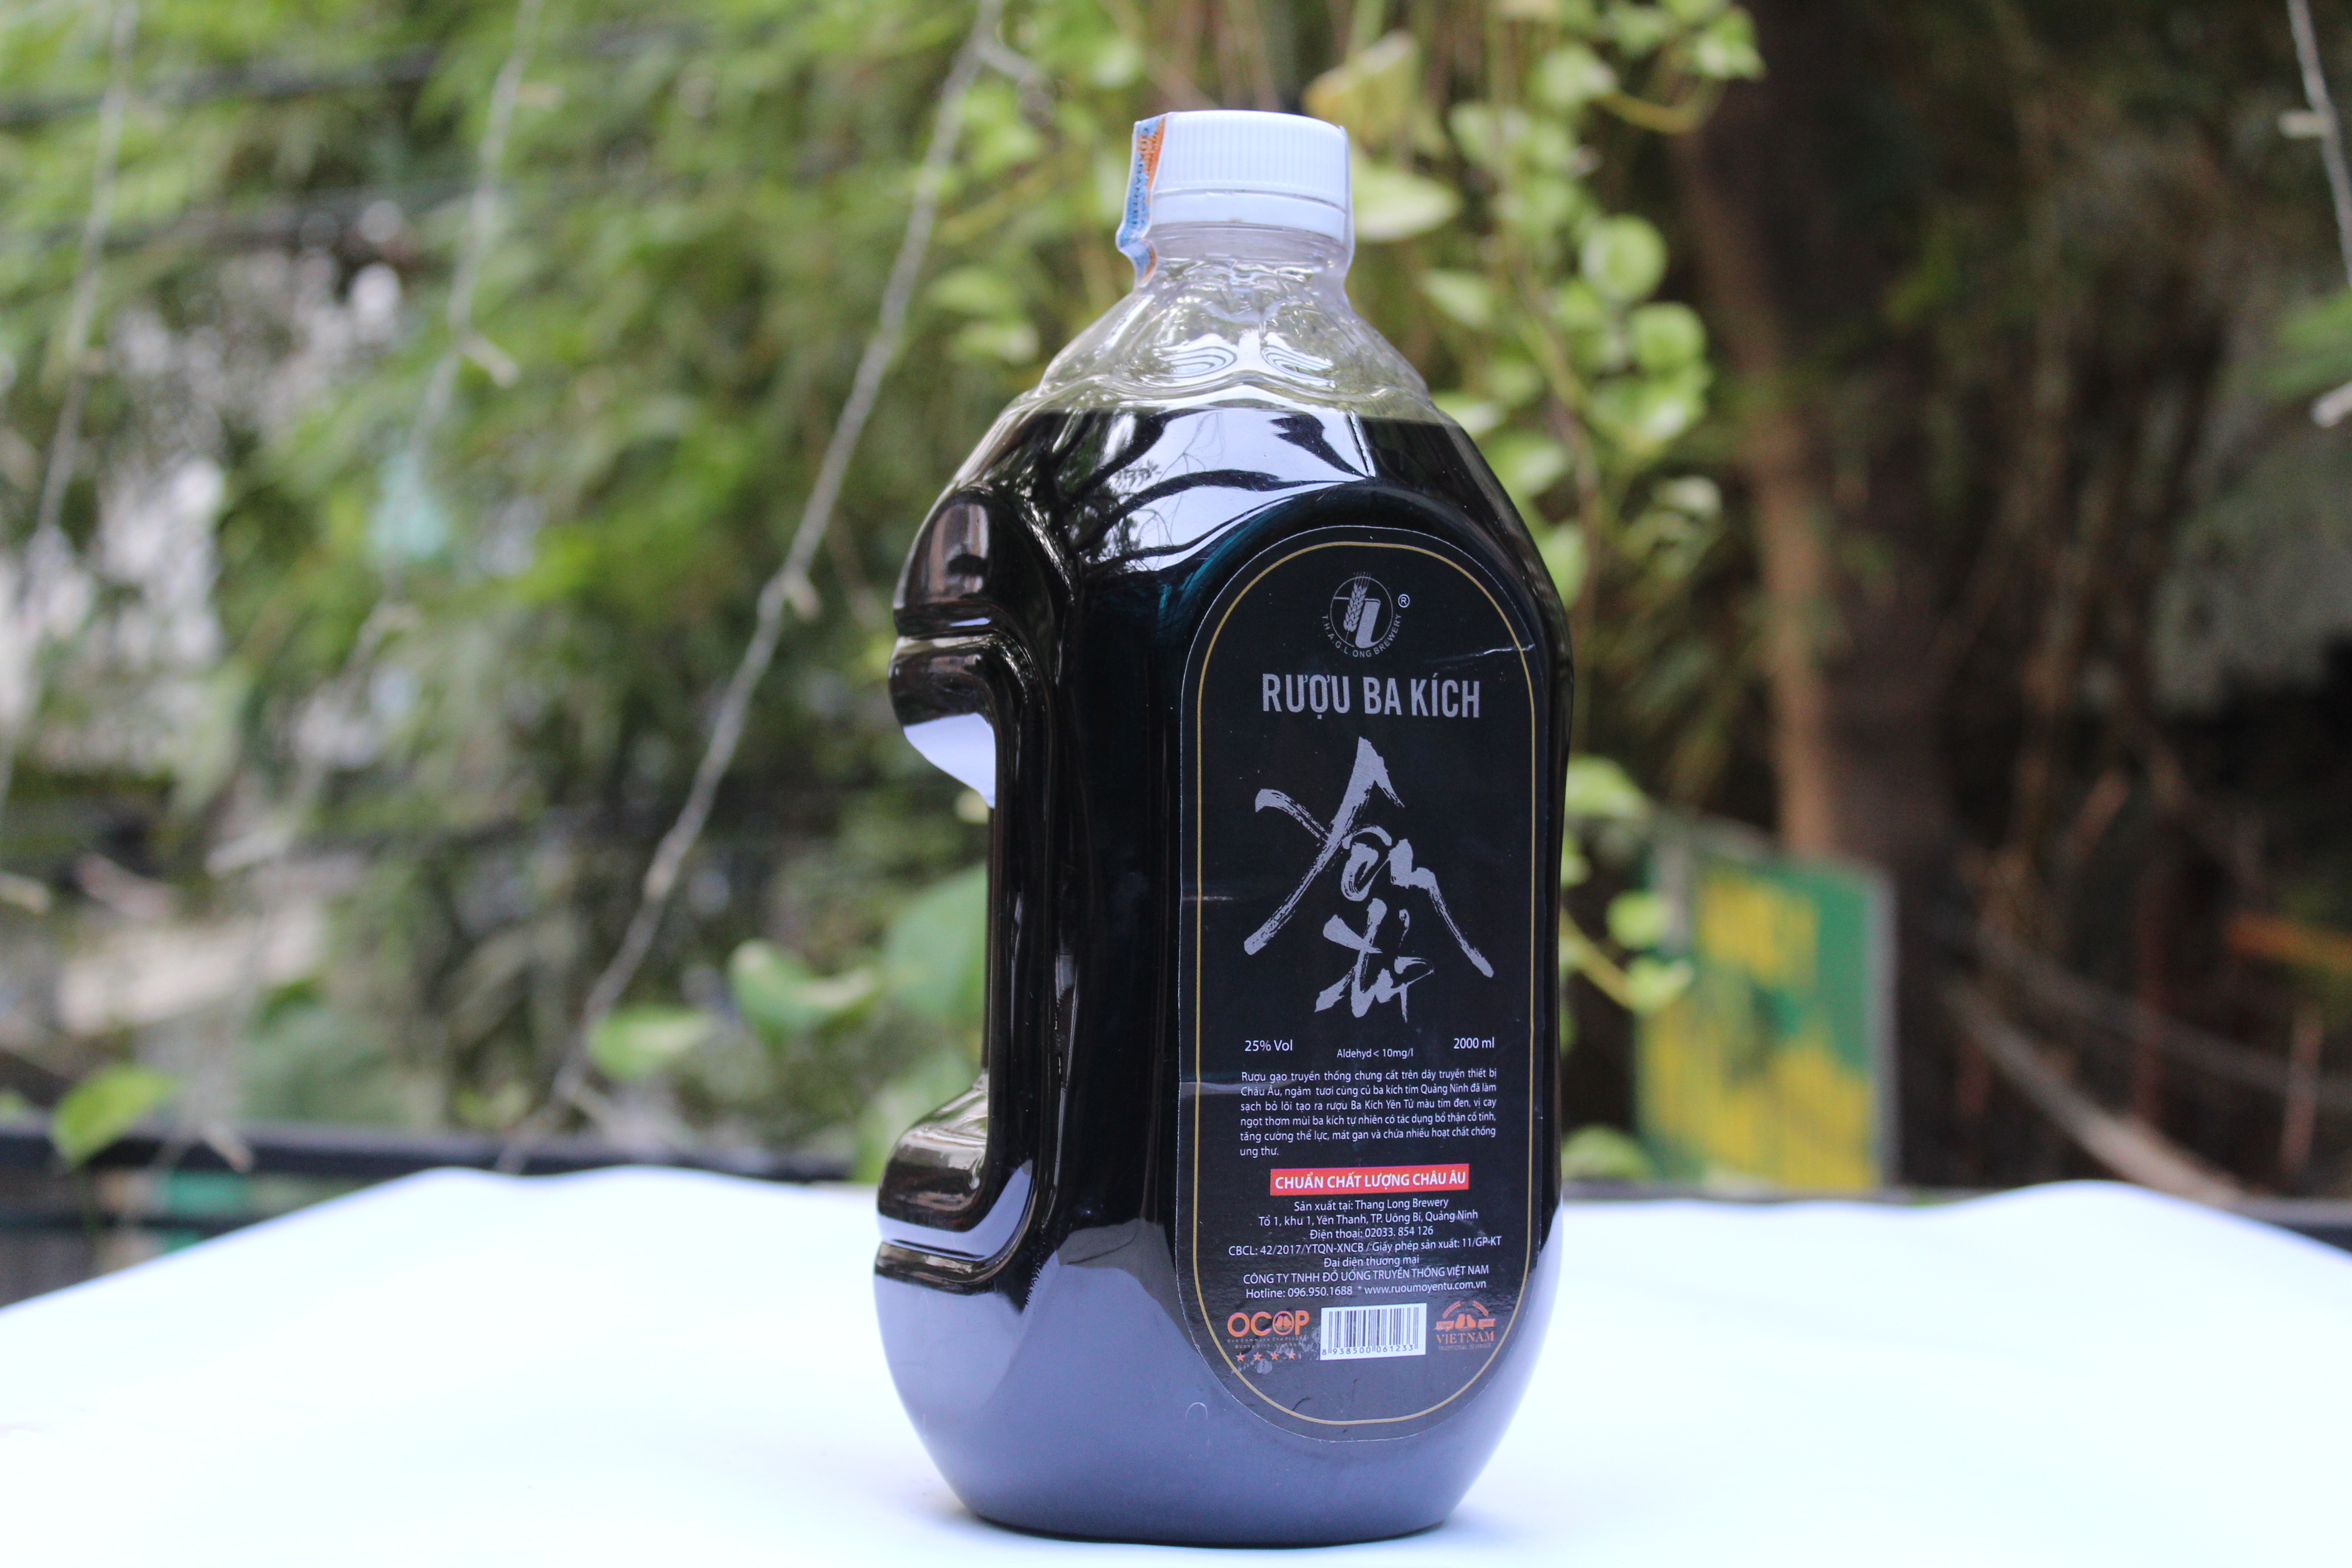 Rượu Ba Kích Yên Tử 27% Vol Chai Thủy Tinh 500ml - OCOP 4 Sao - Đặc sản Quảng Ninh